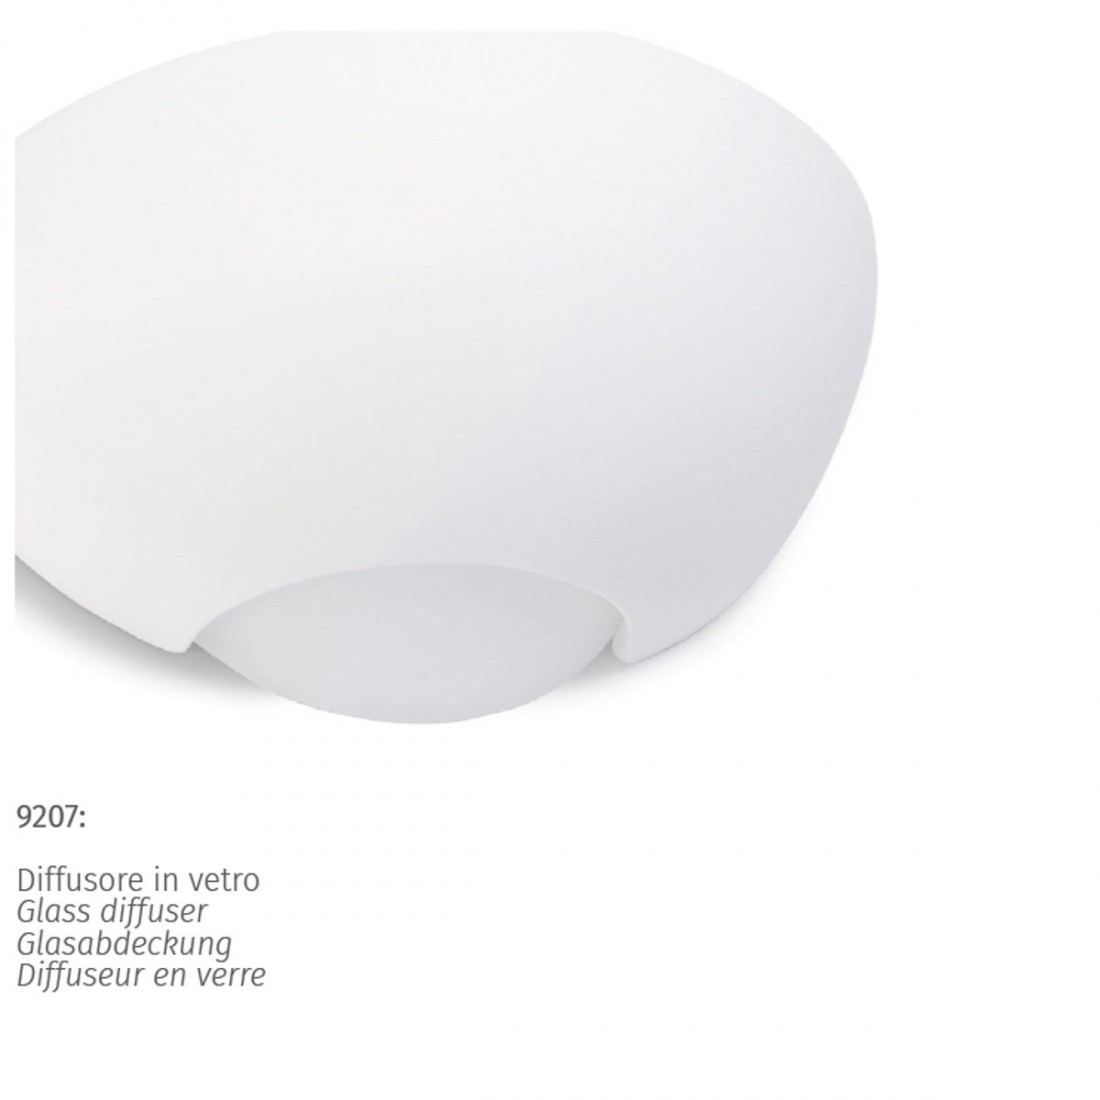 Applique BF-9207 41 E27 LED gesso bianco verniciabile lampada parete biemissione vaschetta interno IP20